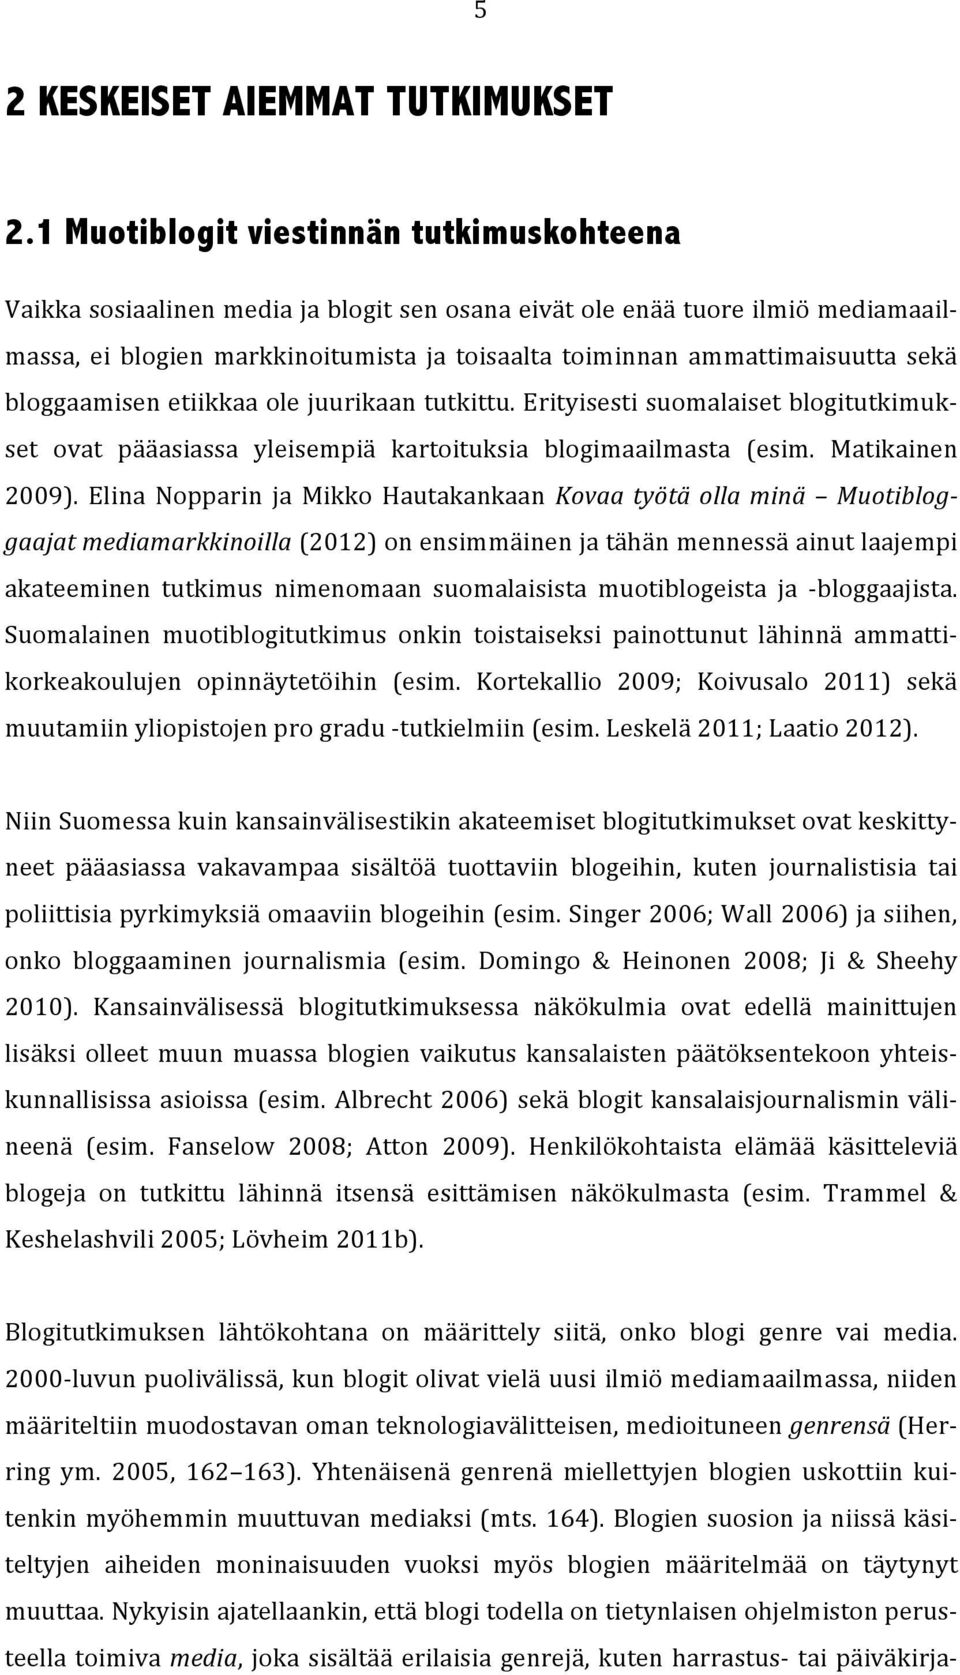 ammattimaisuutta sekä bloggaamisen etiikkaa ole juurikaan tutkittu. Erityisesti suomalaiset blogitutkimuk- set ovat pääasiassa yleisempiä kartoituksia blogimaailmasta (esim. Matikainen 2009).